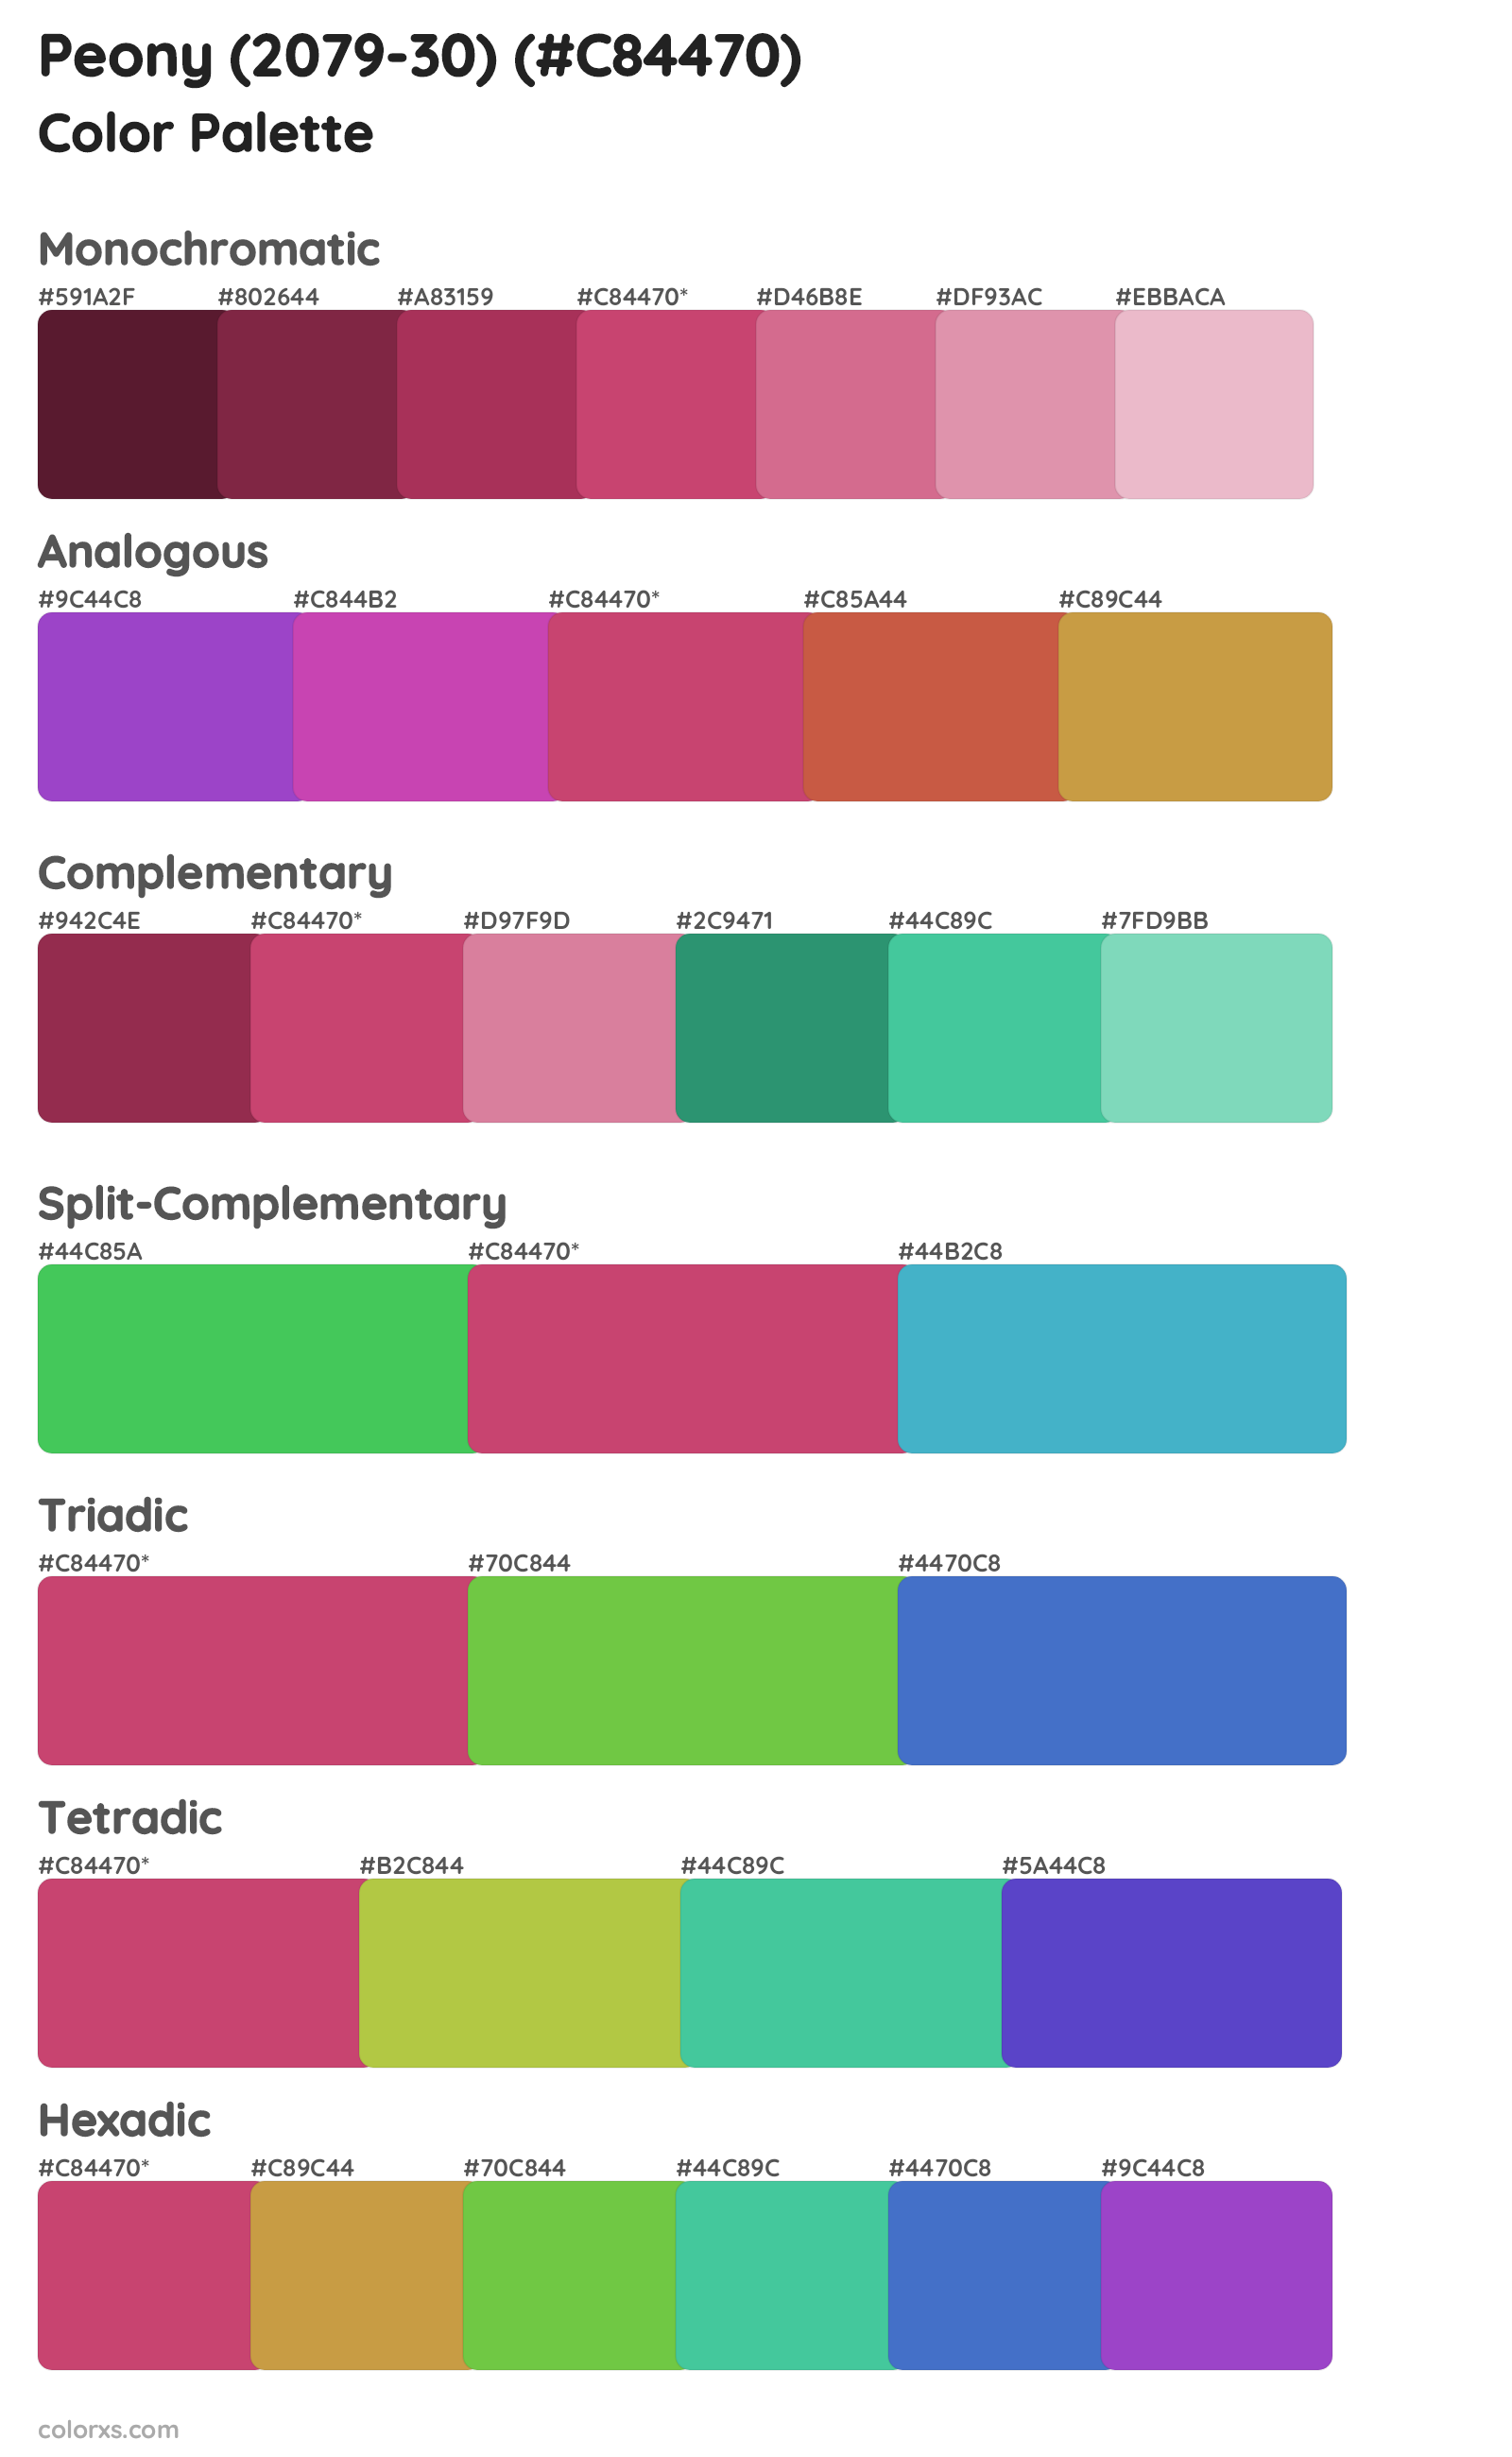 Peony (2079-30) Color Scheme Palettes